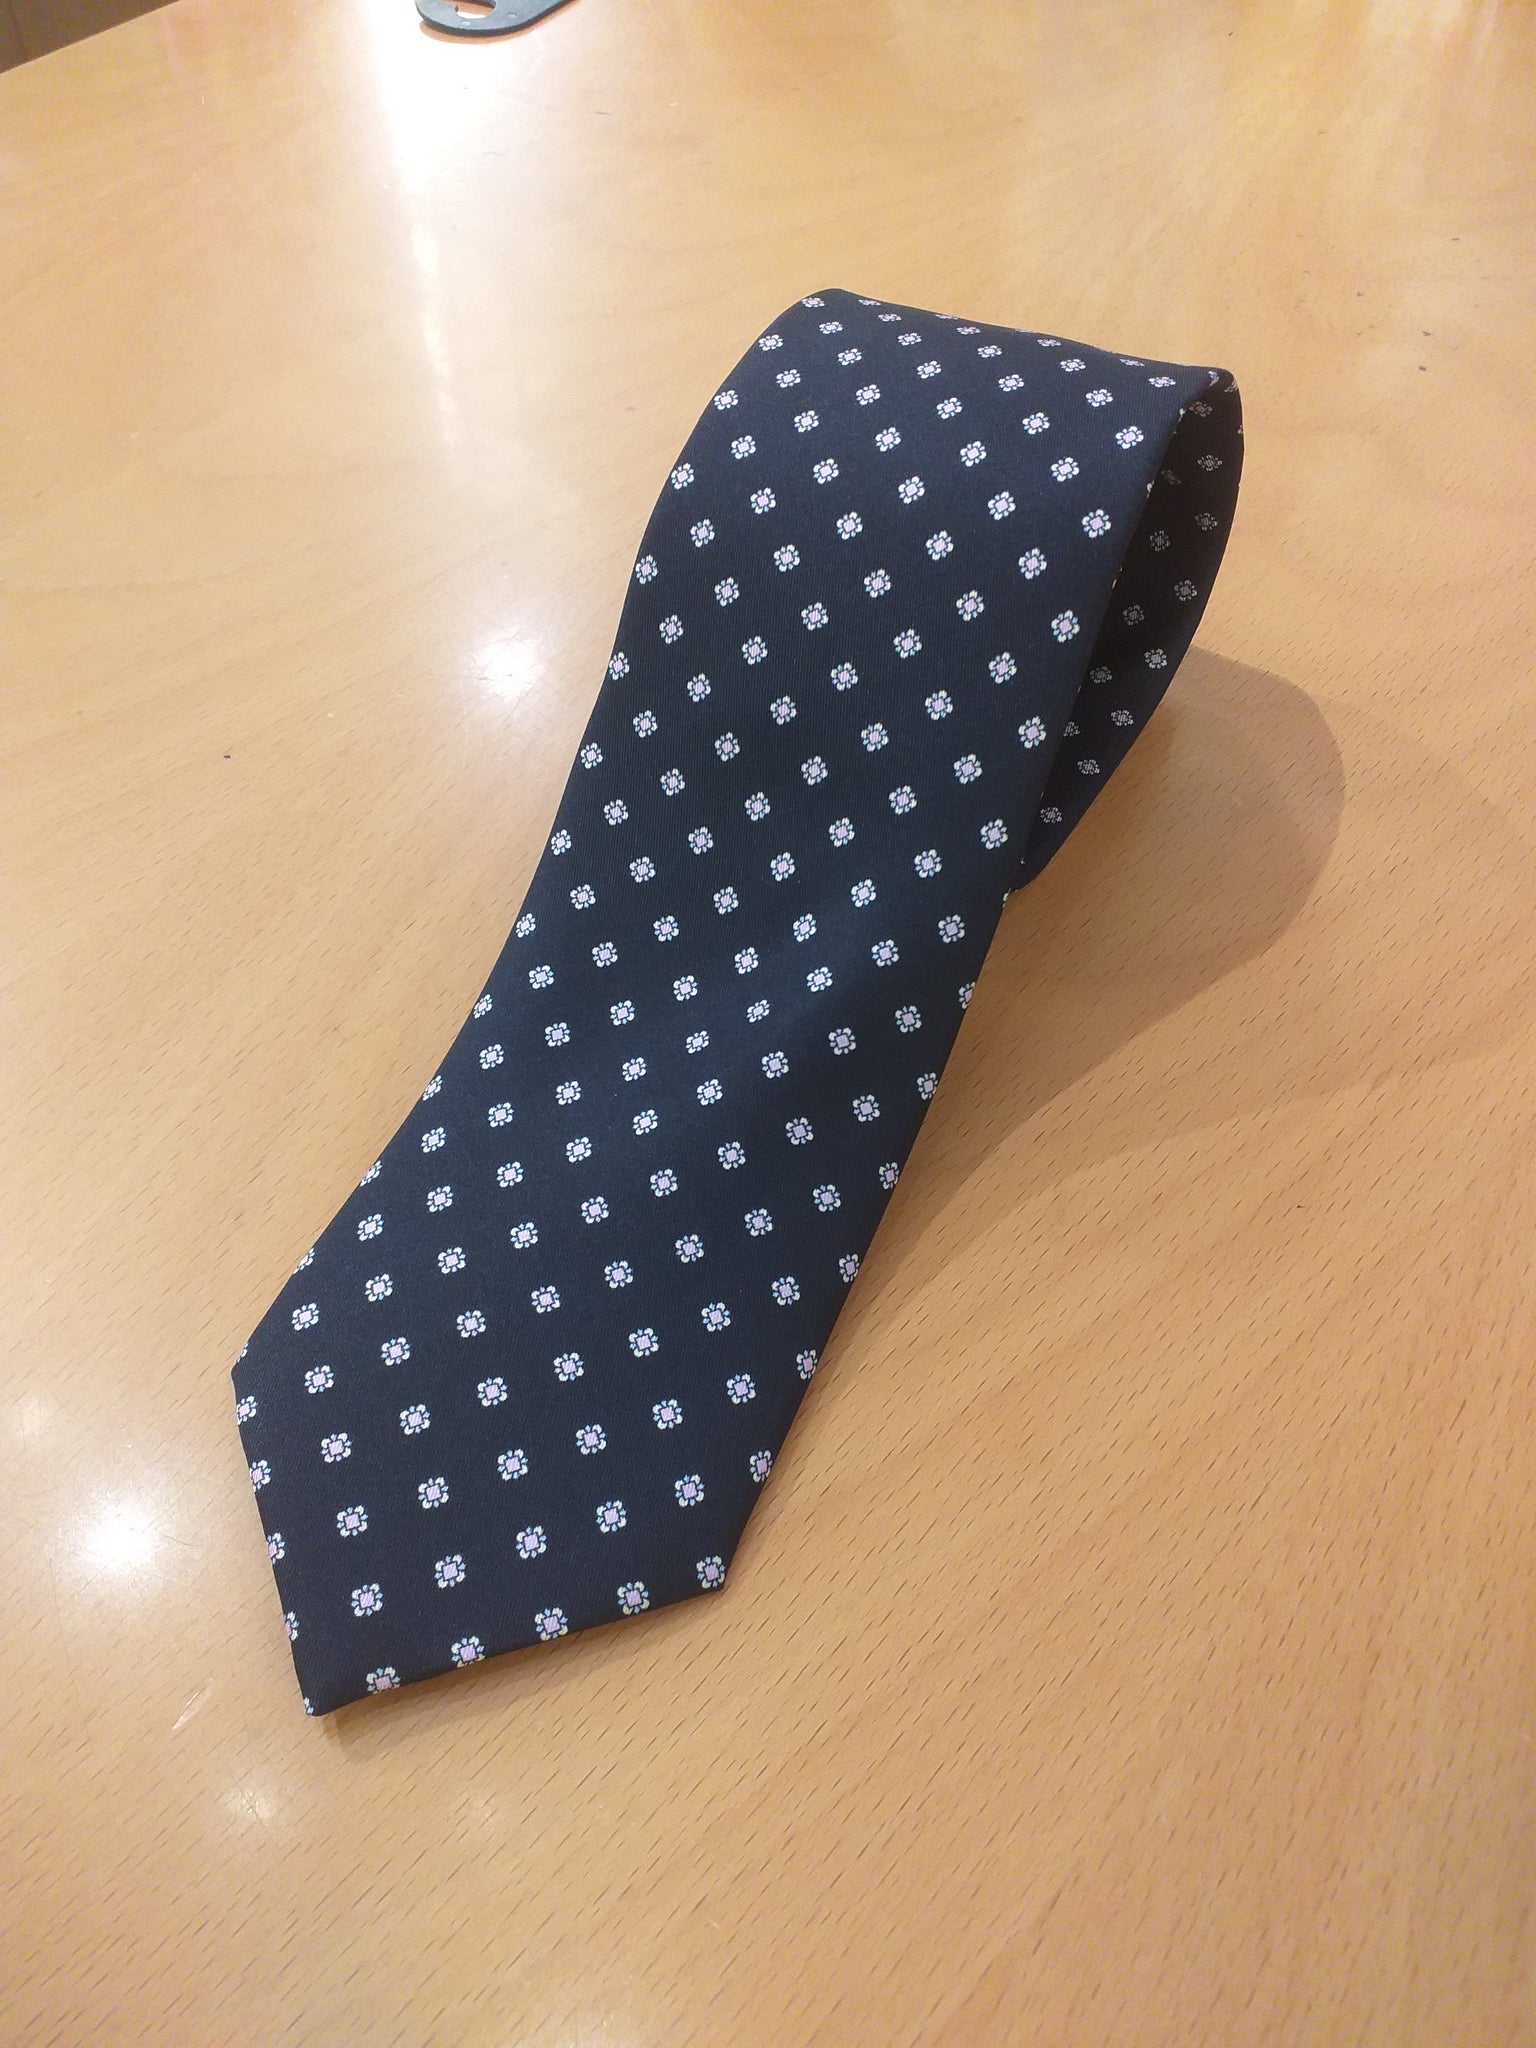 Cravatta classica nera - classic black tie